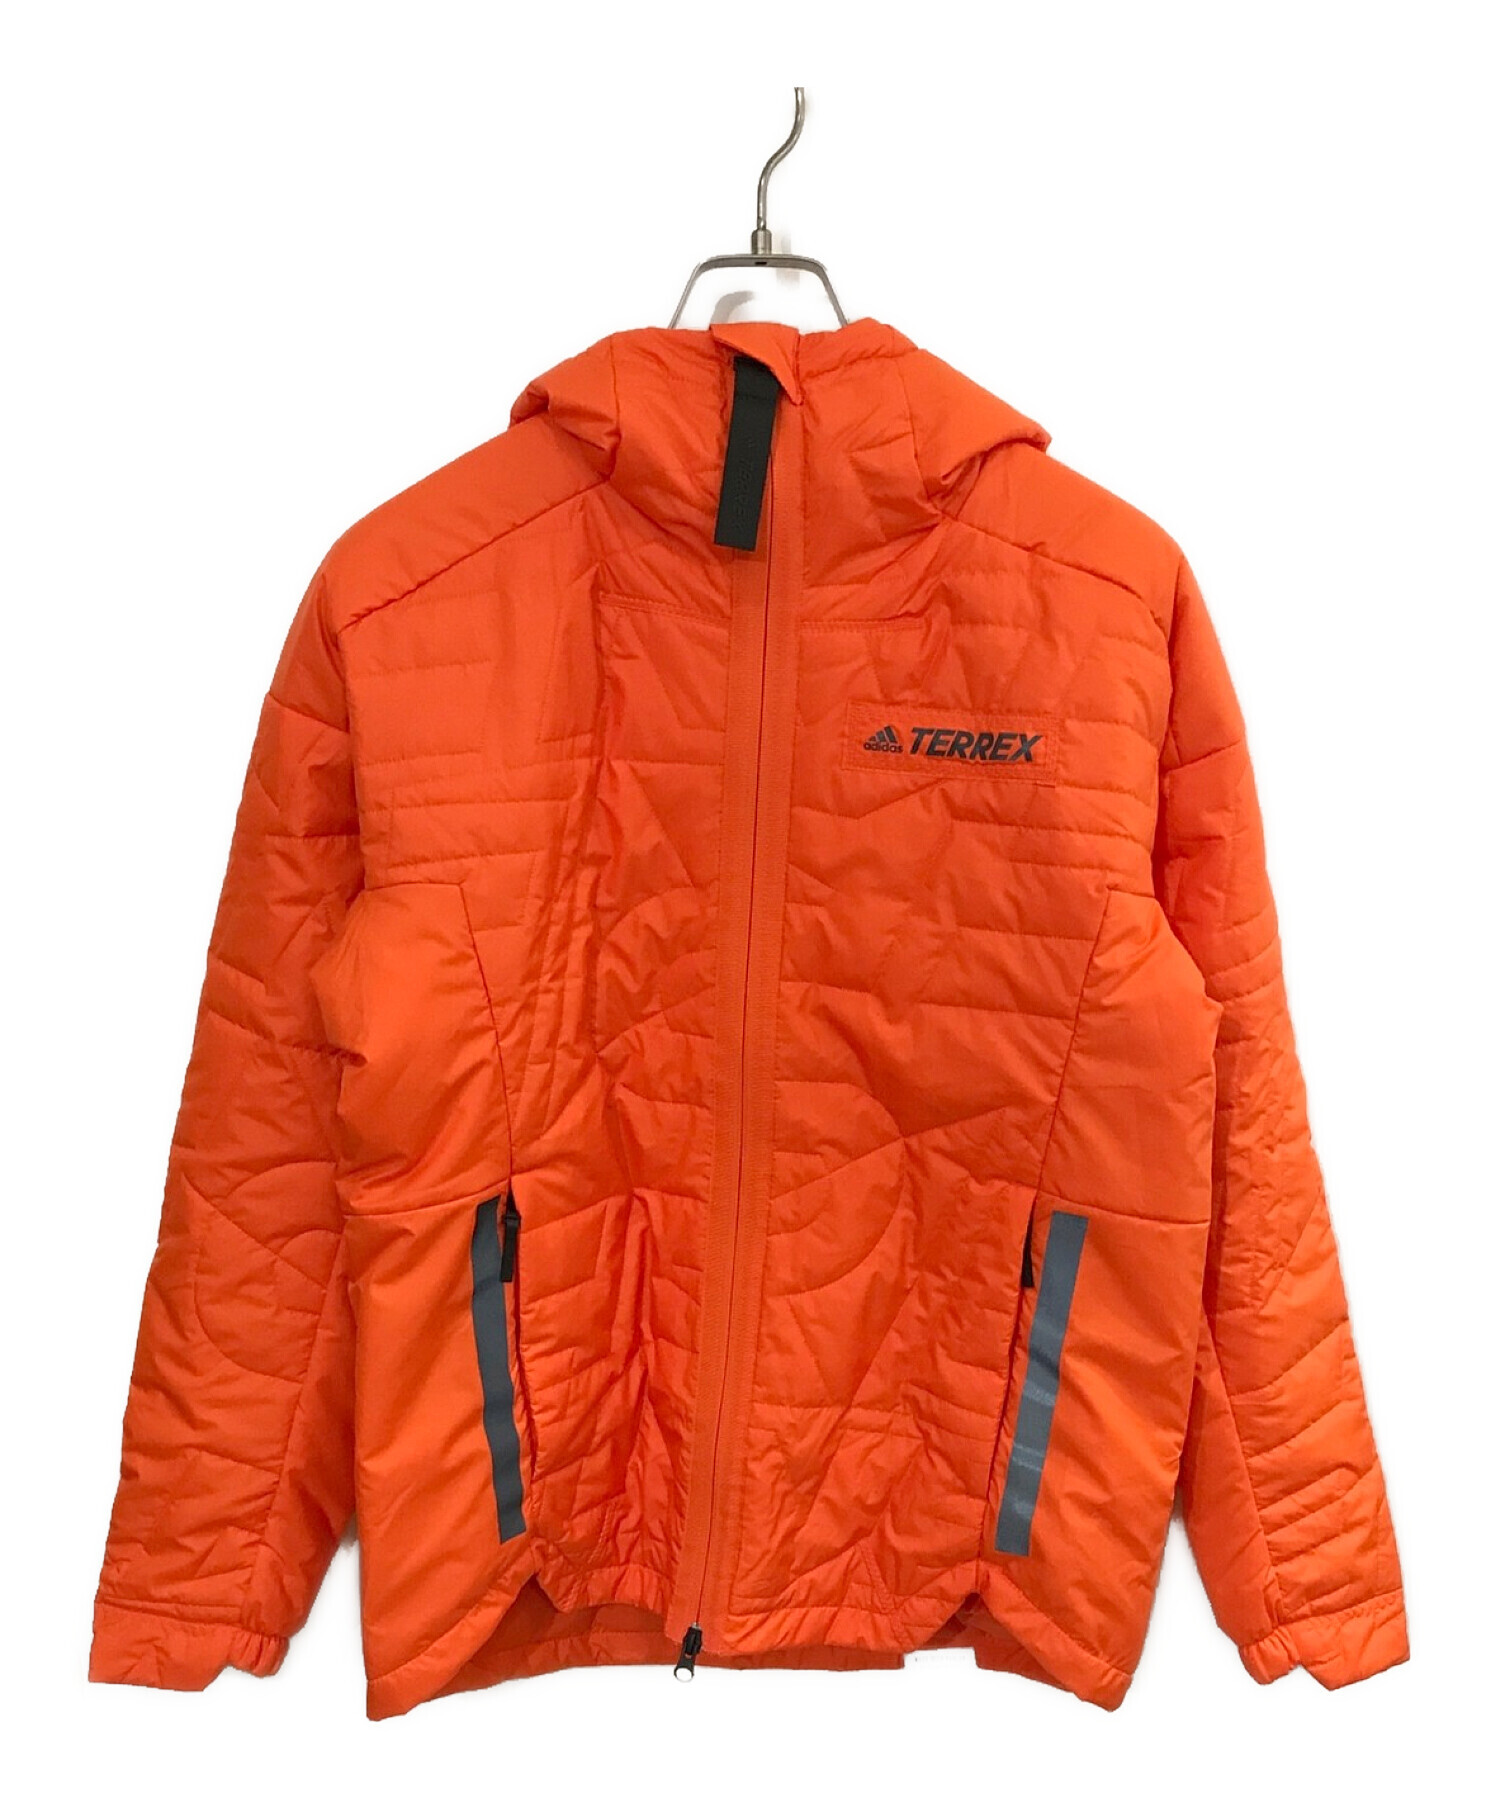 adidas (アディダス) テレックス マイシェルター PRIMALOFT フード付きパデッドジャケット オレンジ サイズ:M